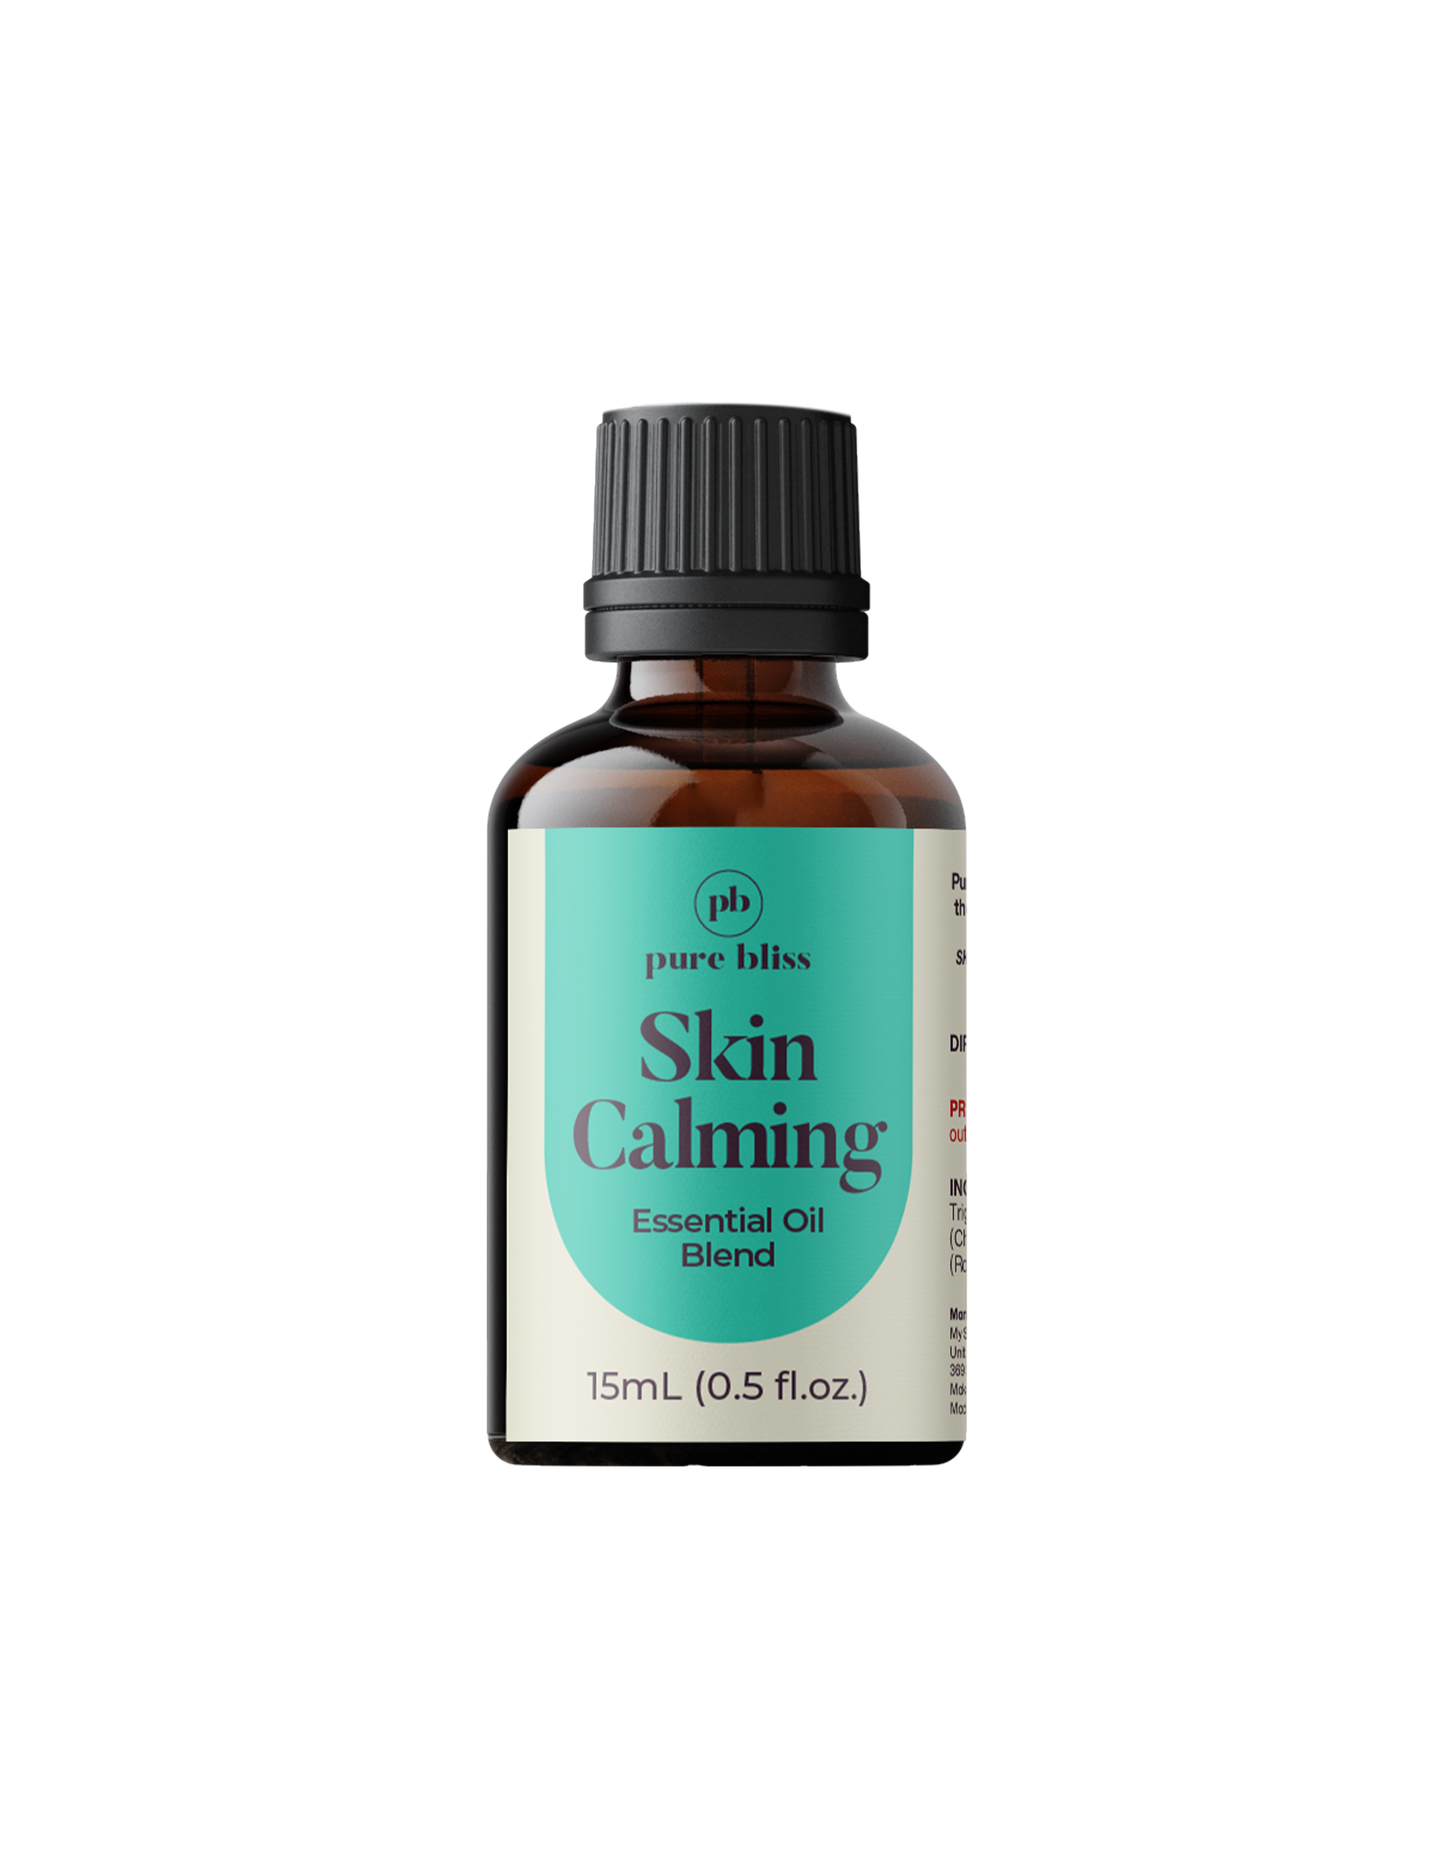 Skin Calming